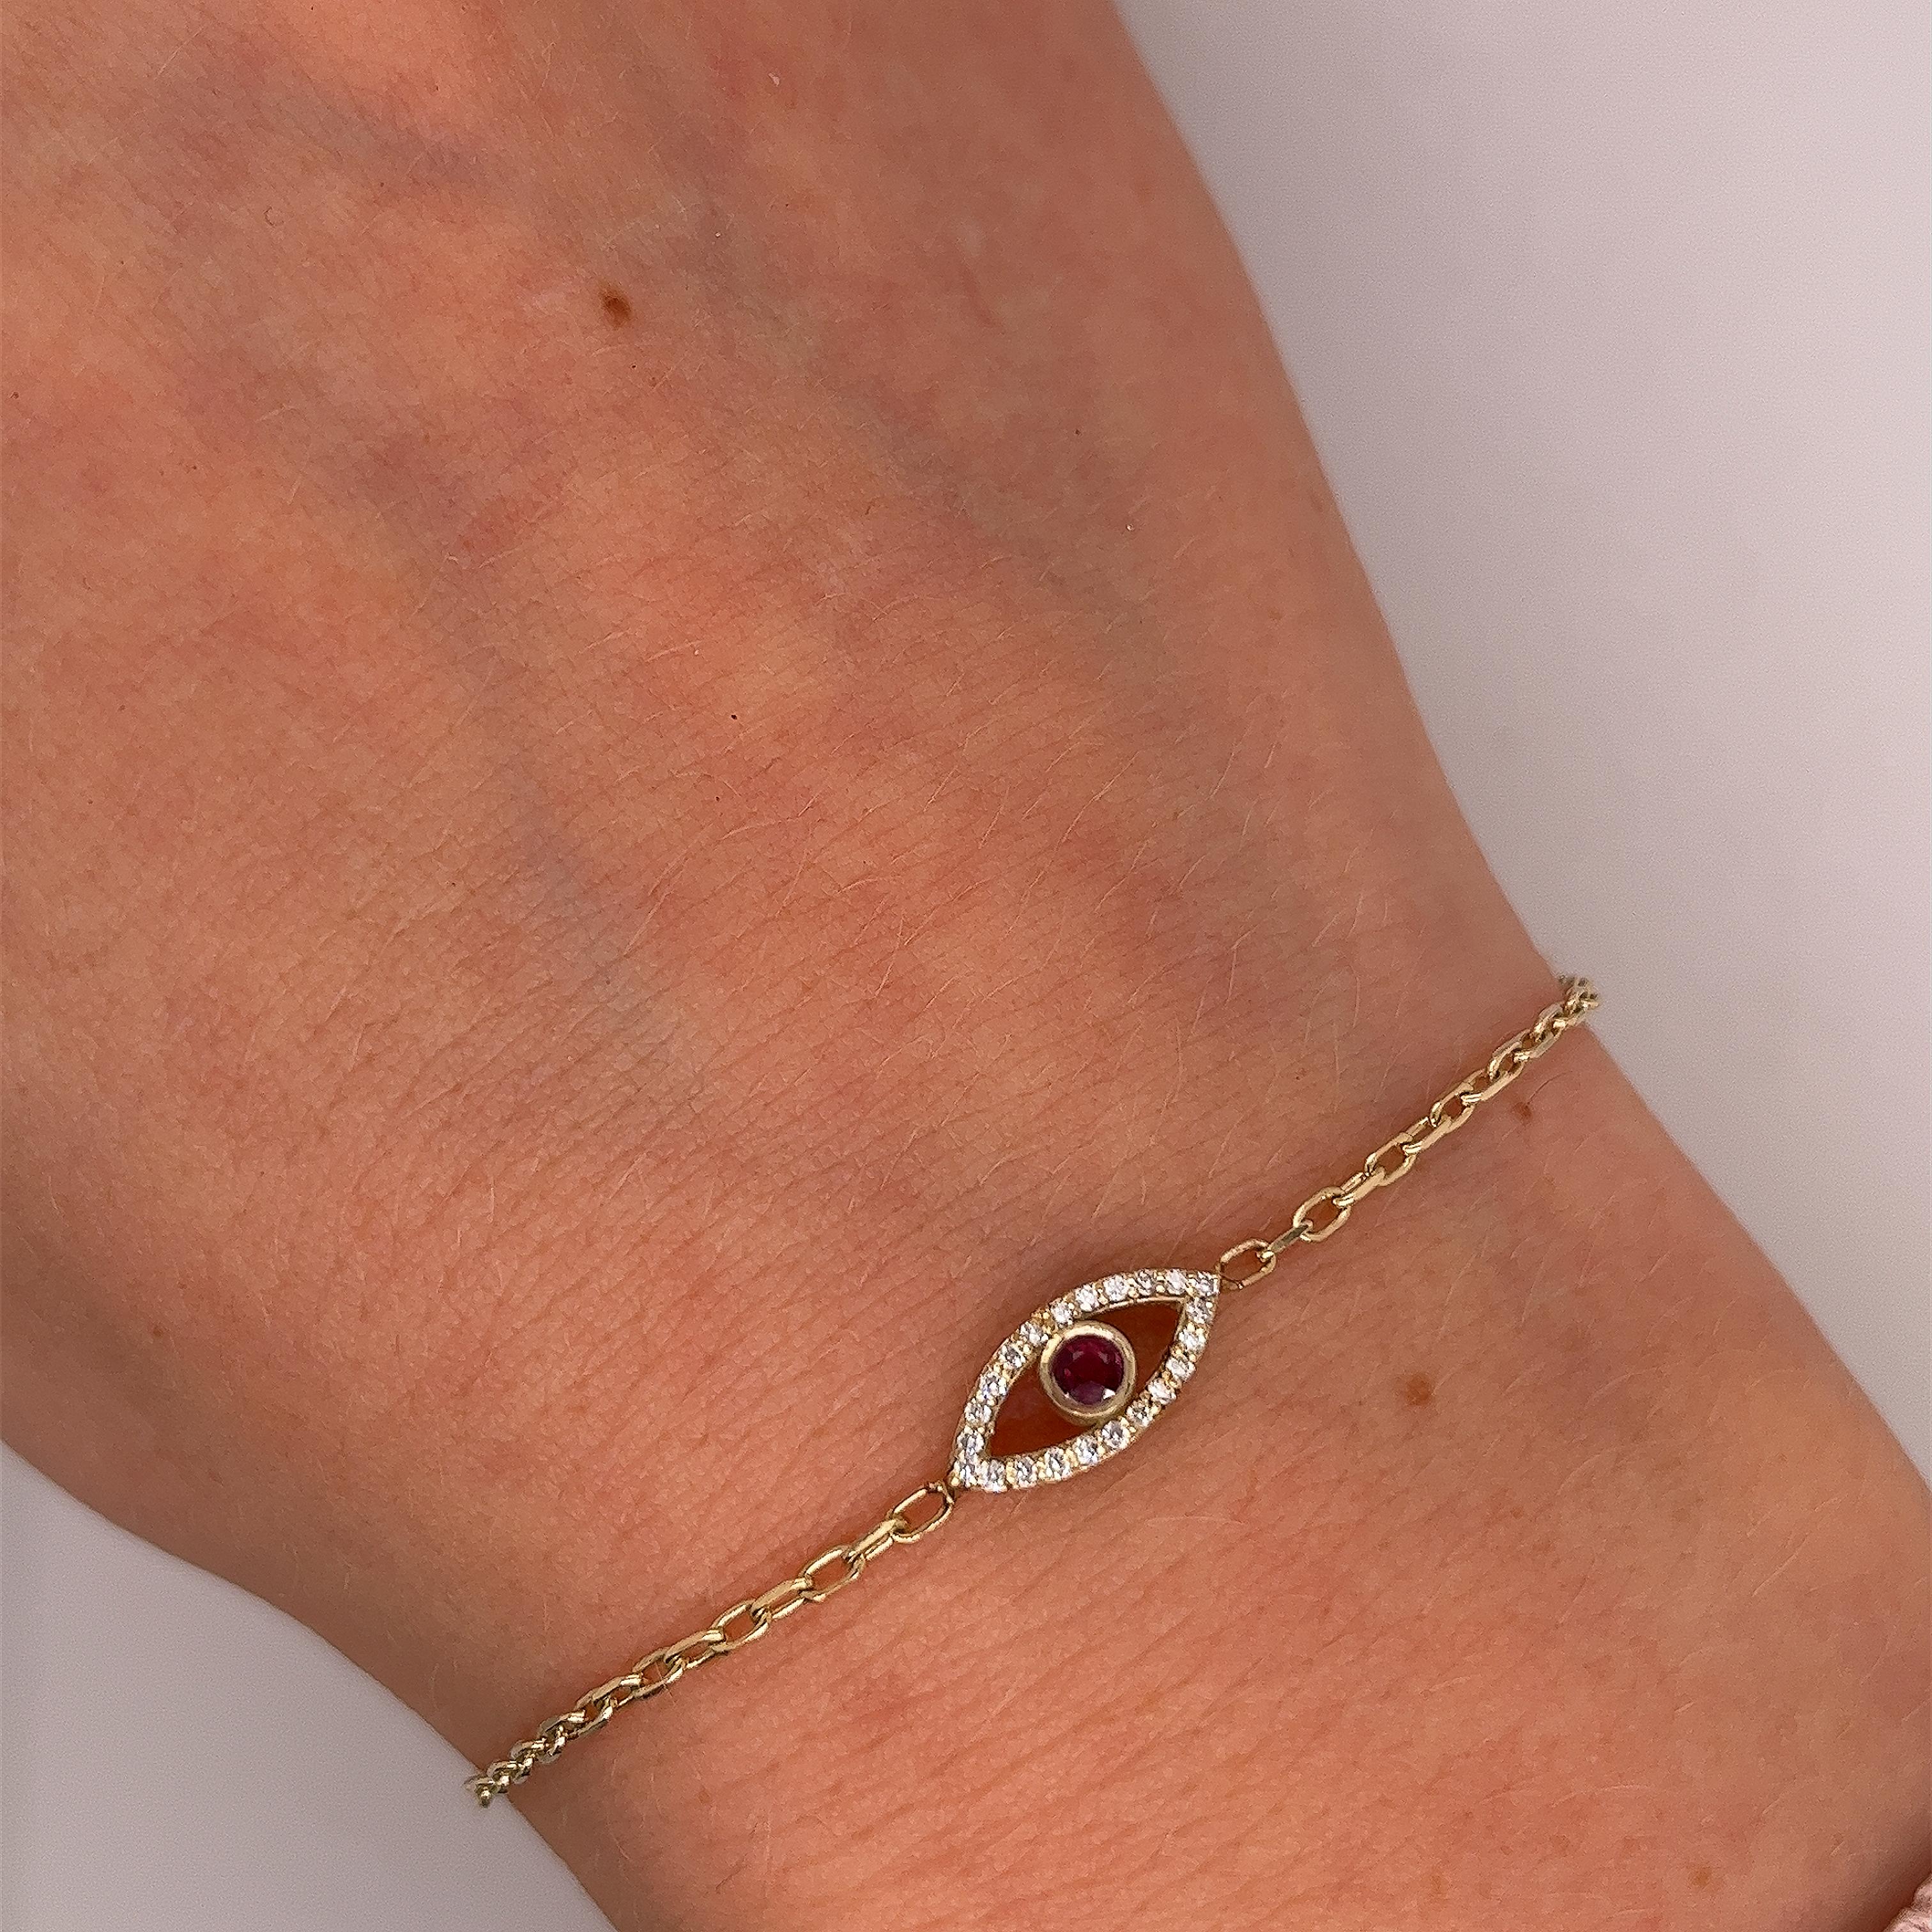 Hergestellt von Jewellery Cave - unser exquisiter 0,08ct Diamant 
Set und runder Rubin Böses Auge Armband-
eine bezaubernde Verschmelzung von Stil und Symbolik. 
Das aus 9 Karat Gelbgold gefertigte Herzstück dieses faszinierenden 
Armband ist der